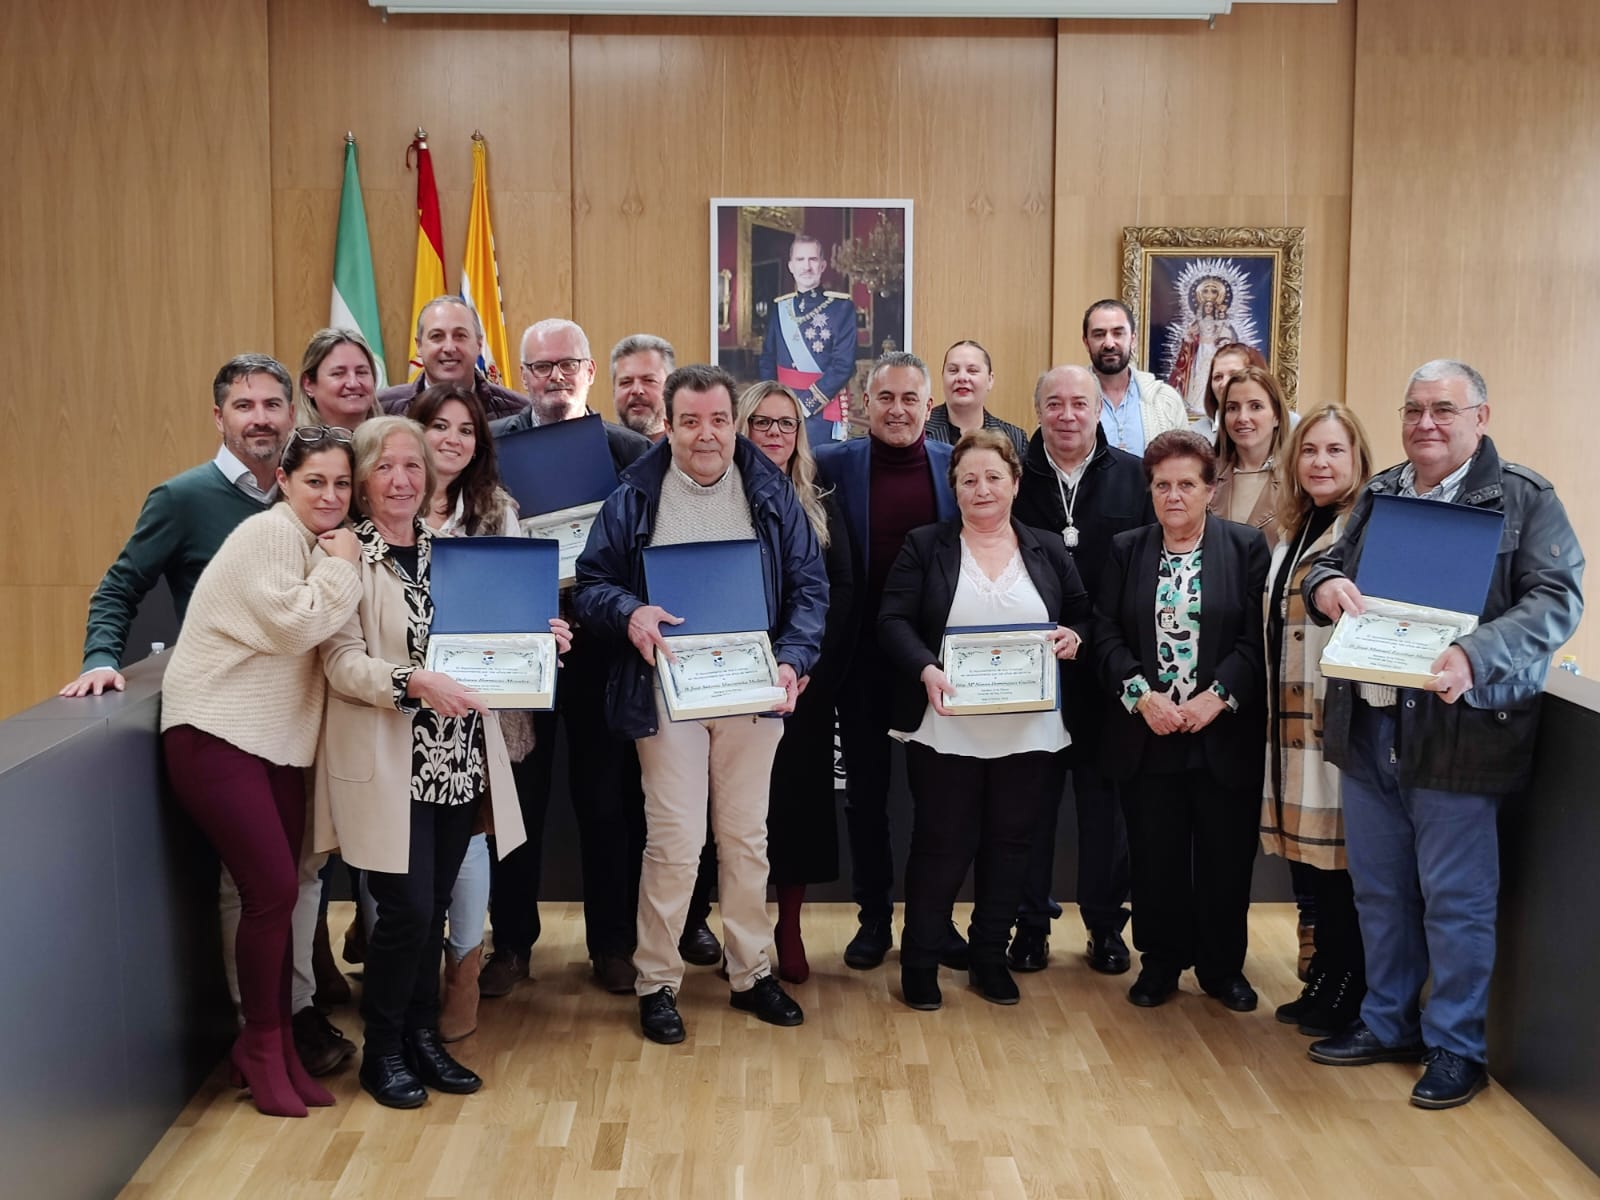 El Ayuntamiento de Isla Cristina homenajea a sus empleados jubilados